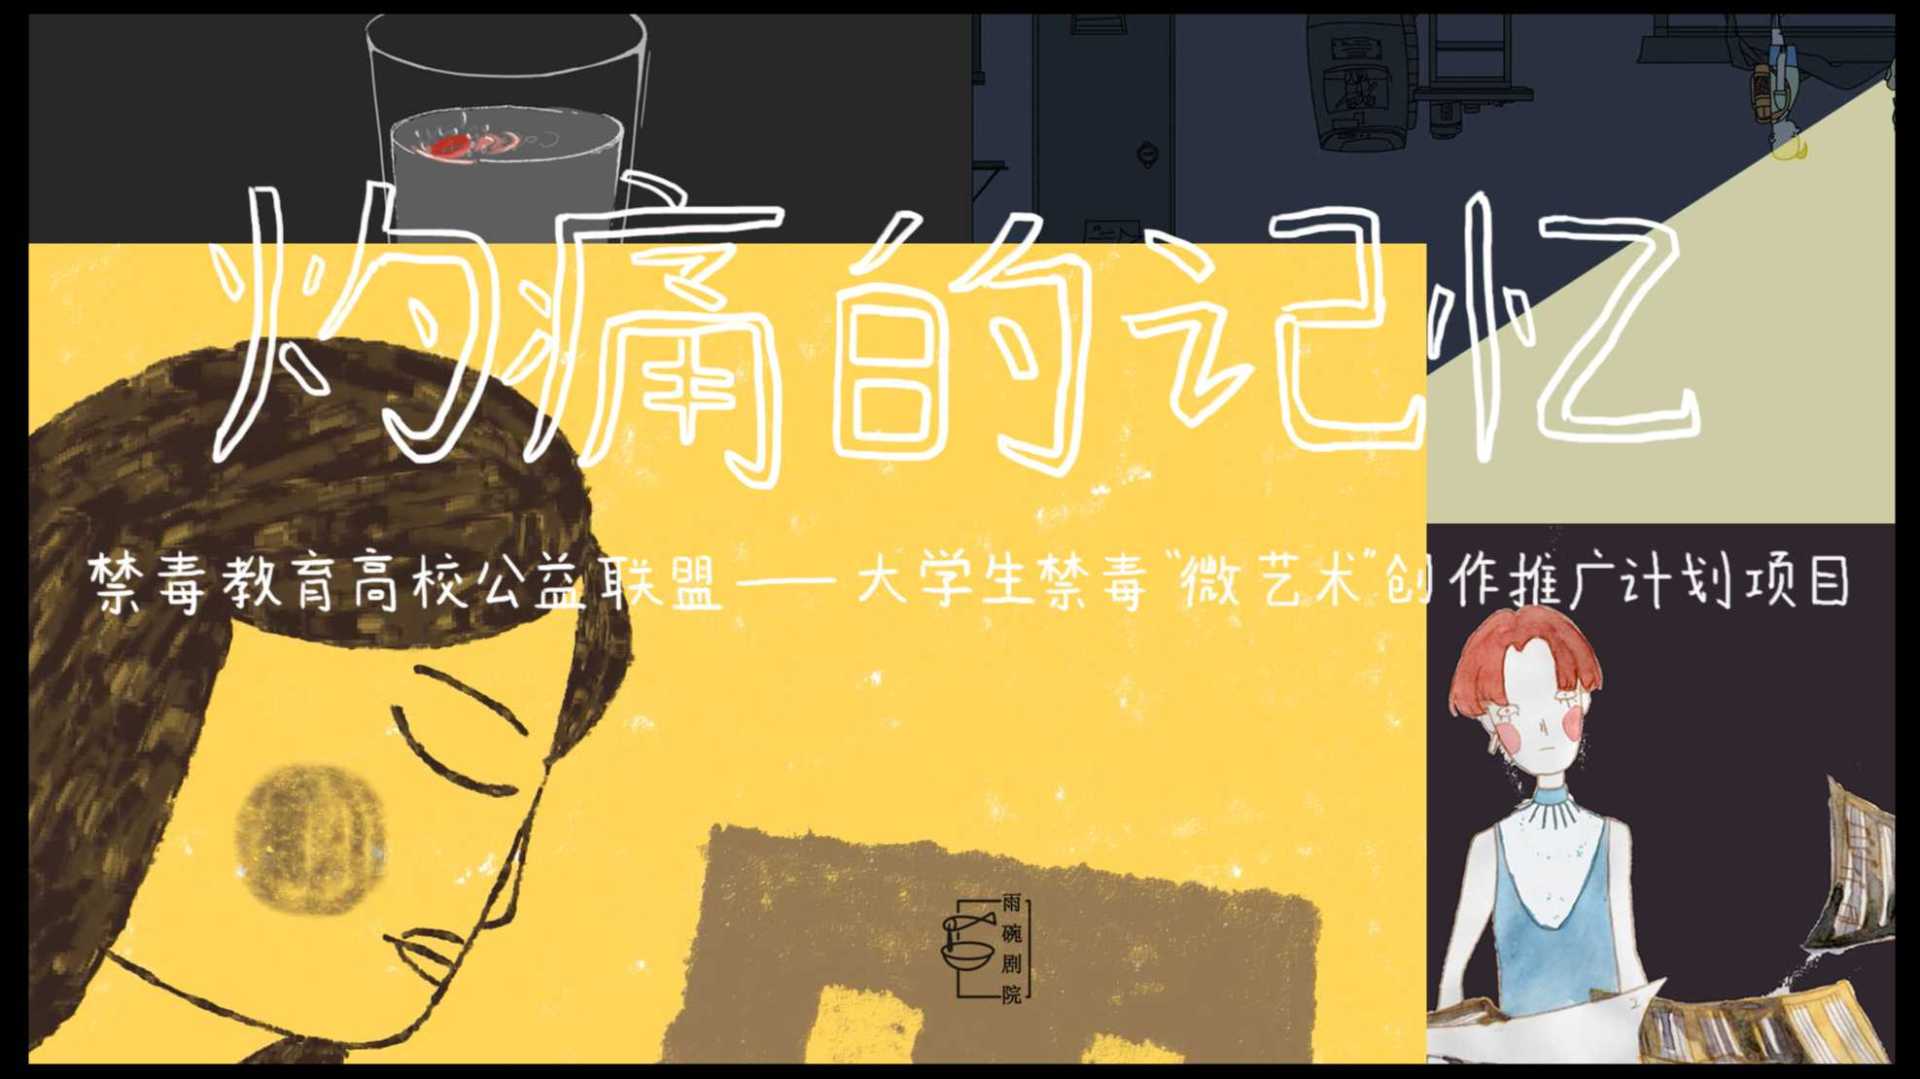 中国传媒大学师生合作北京禁毒公益短片《灼痛的记忆》，动画纪录片